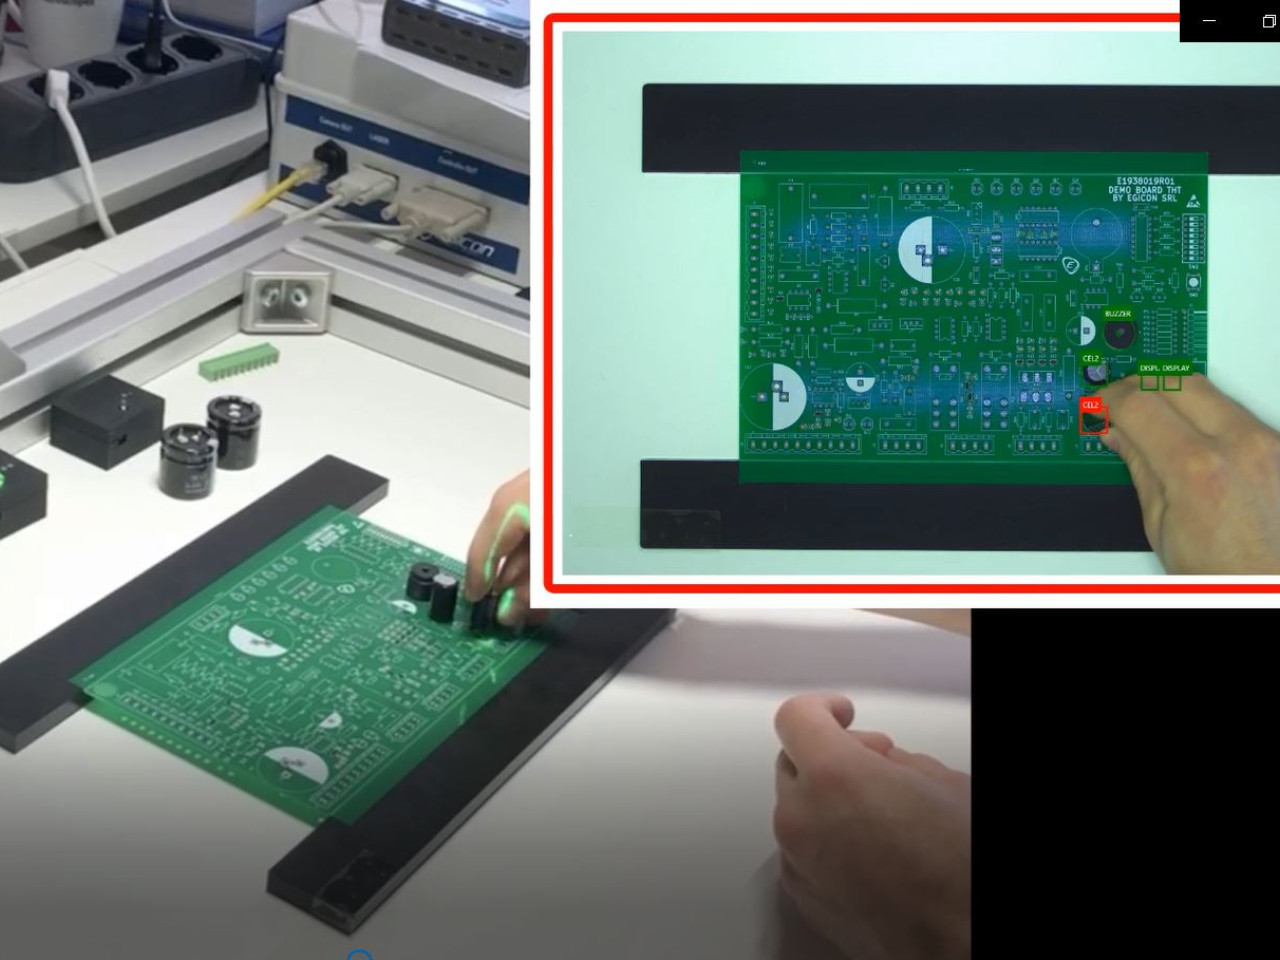 Posizionamento. L'utente colloca il dispositivo da assemblare al PCB in corrispondenza della luce rossa. Rilevato il corretto posizionamento le reti neurali illumineranno di verde lo spot.